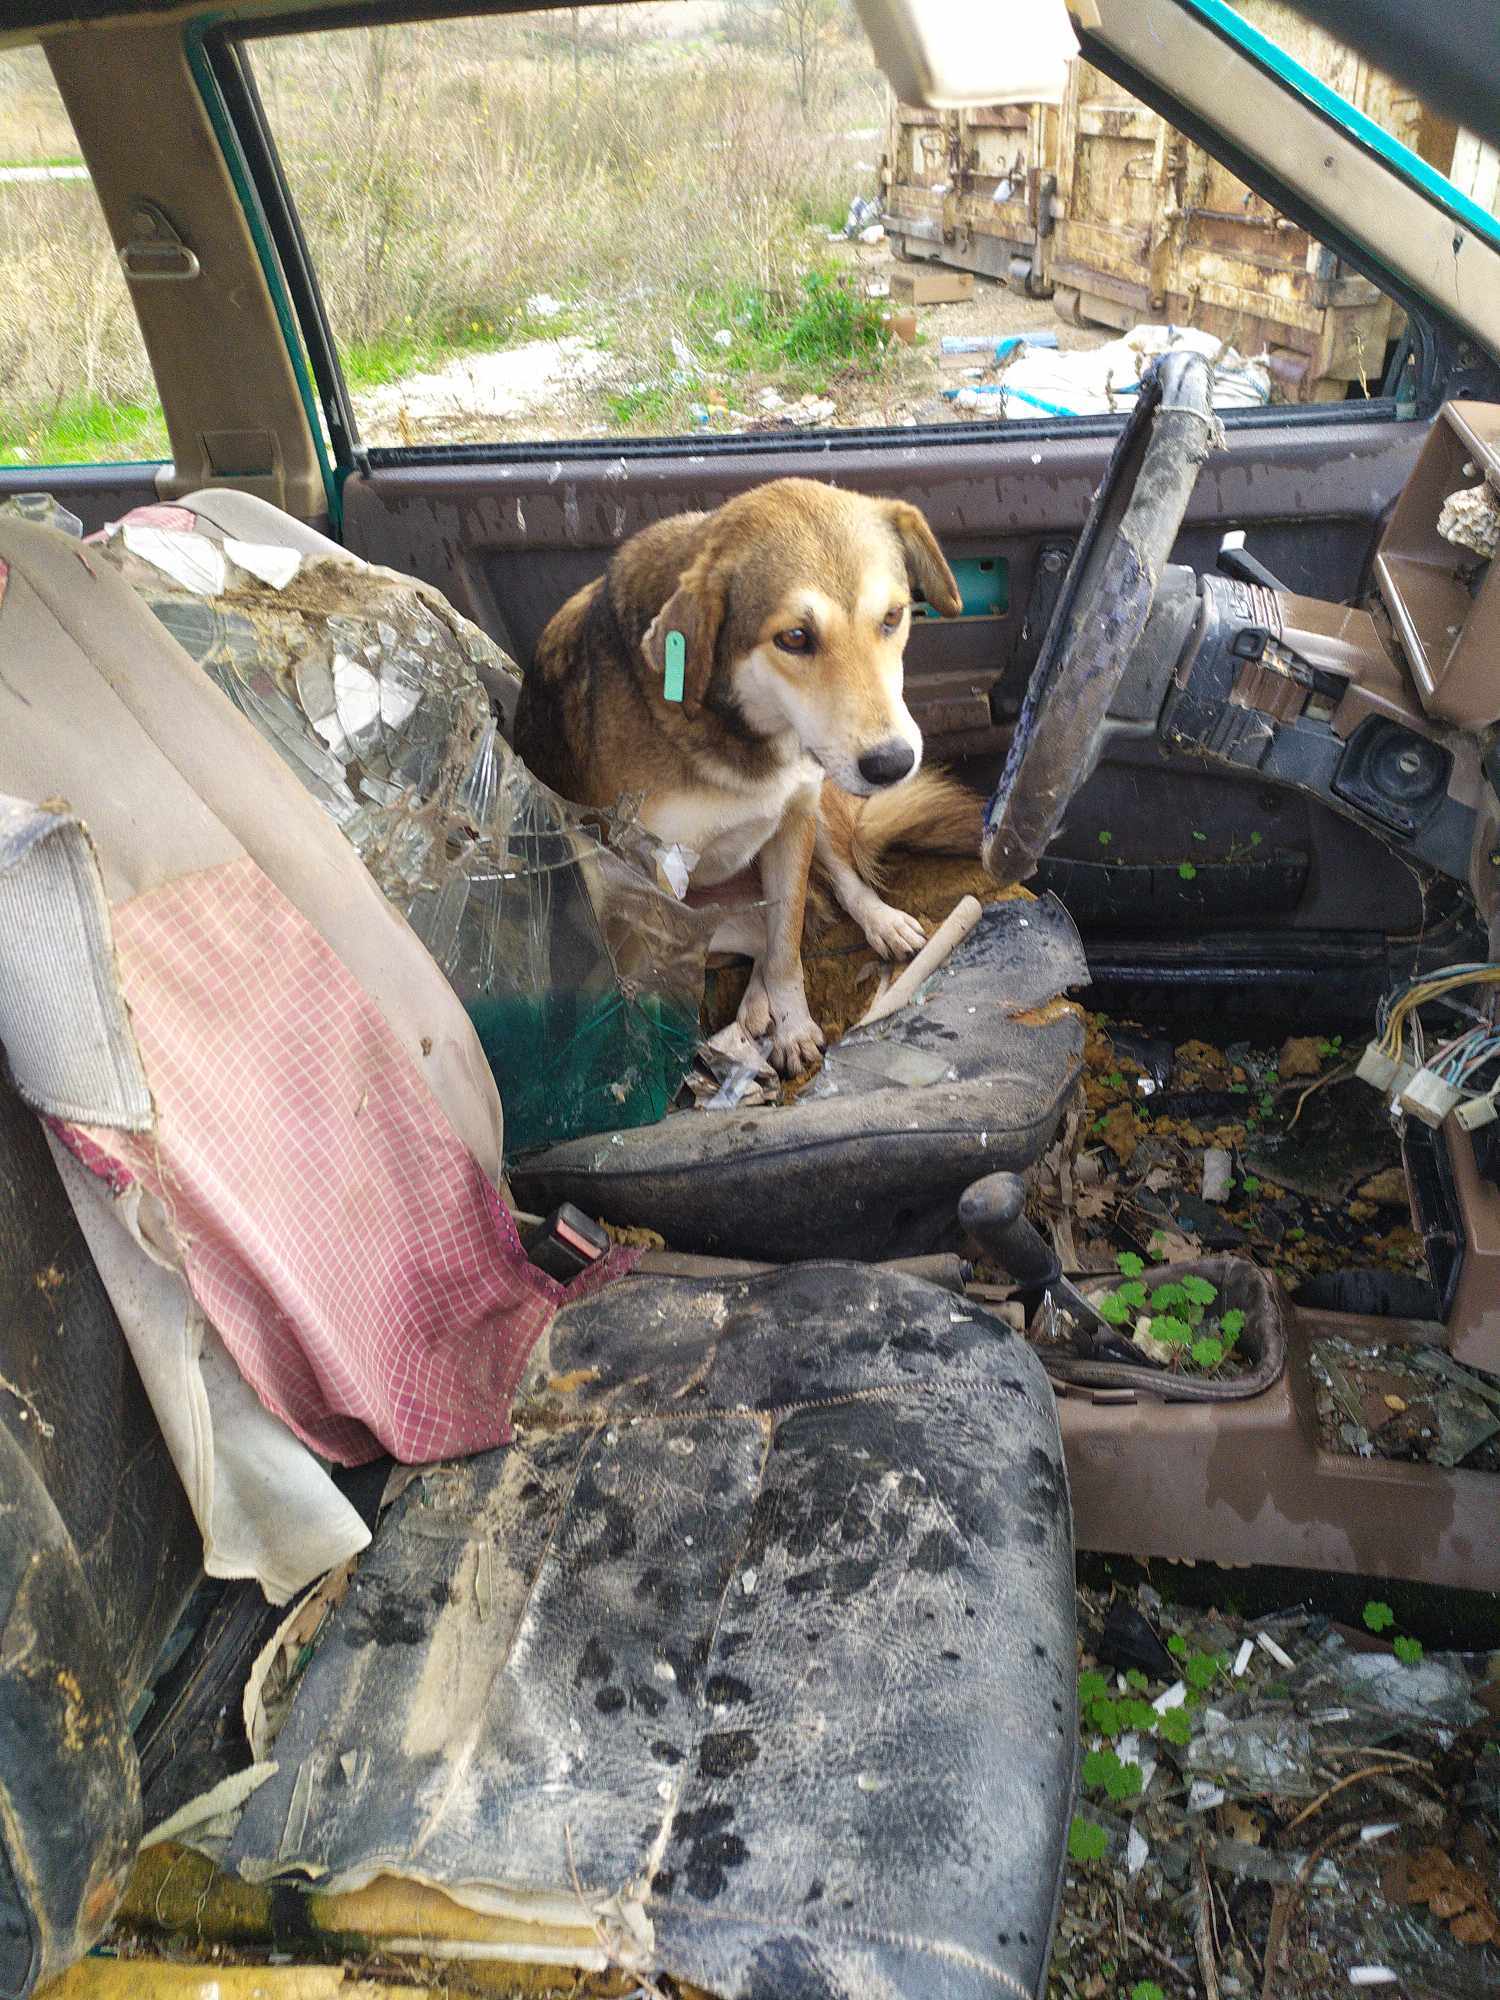 Φρικτές εικόνες στην Ξάνθη με 600 αδέσποτα σκυλιά που ζουν σε χωματερή